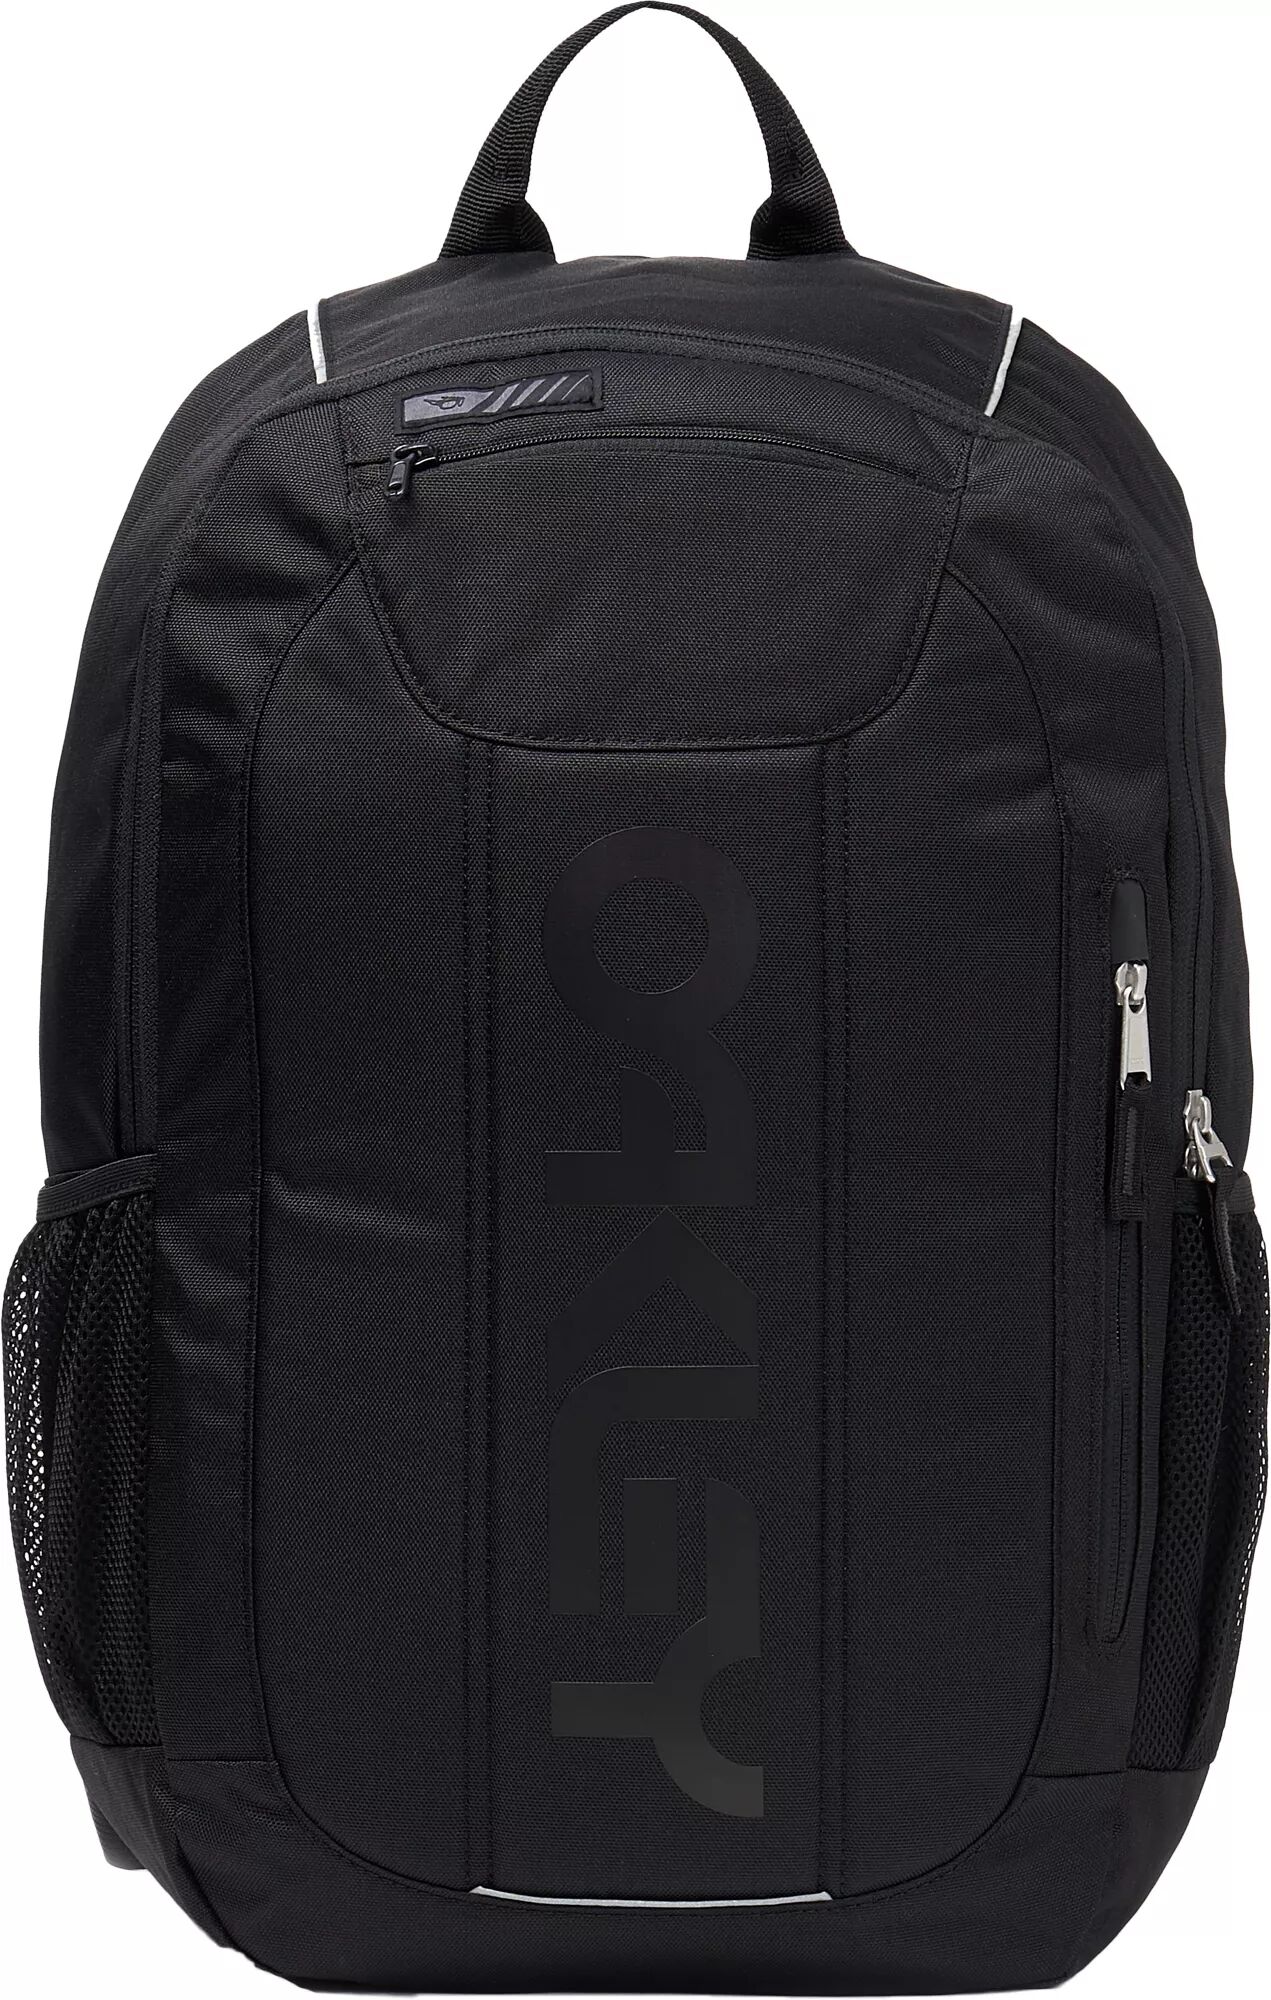 Oakley Enduro 3.0 20L Backpack, Men's, Black